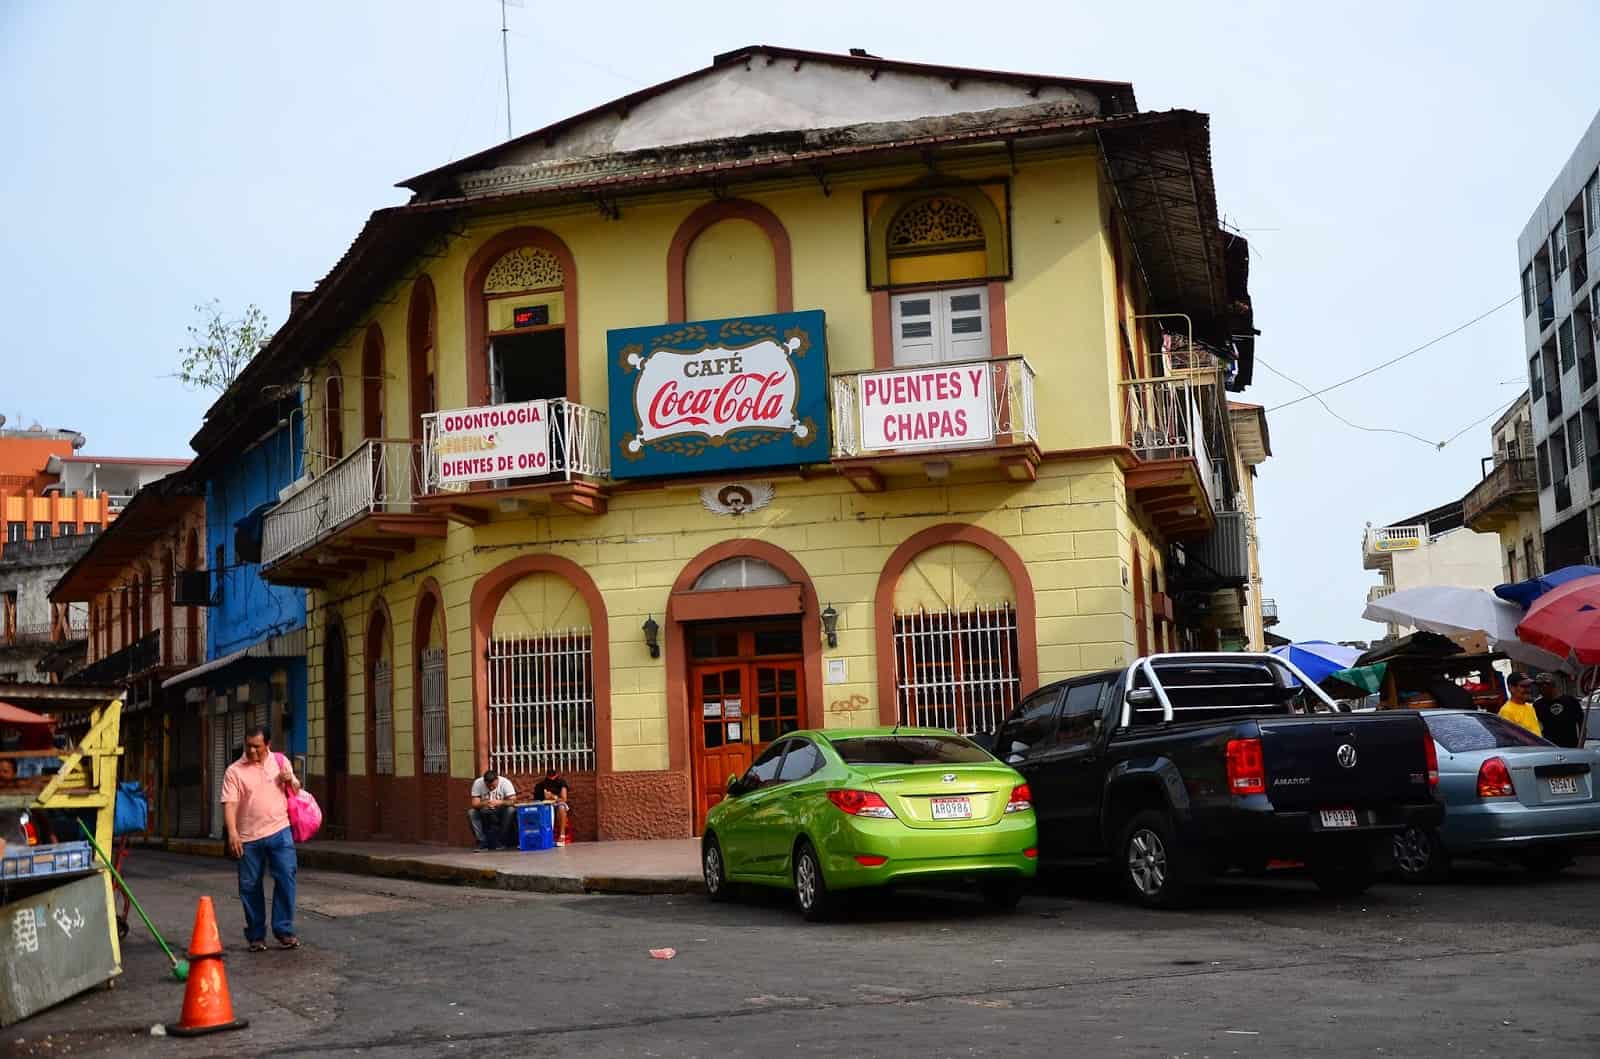 Café Coca-Cola in Casco Viejo, Panama City